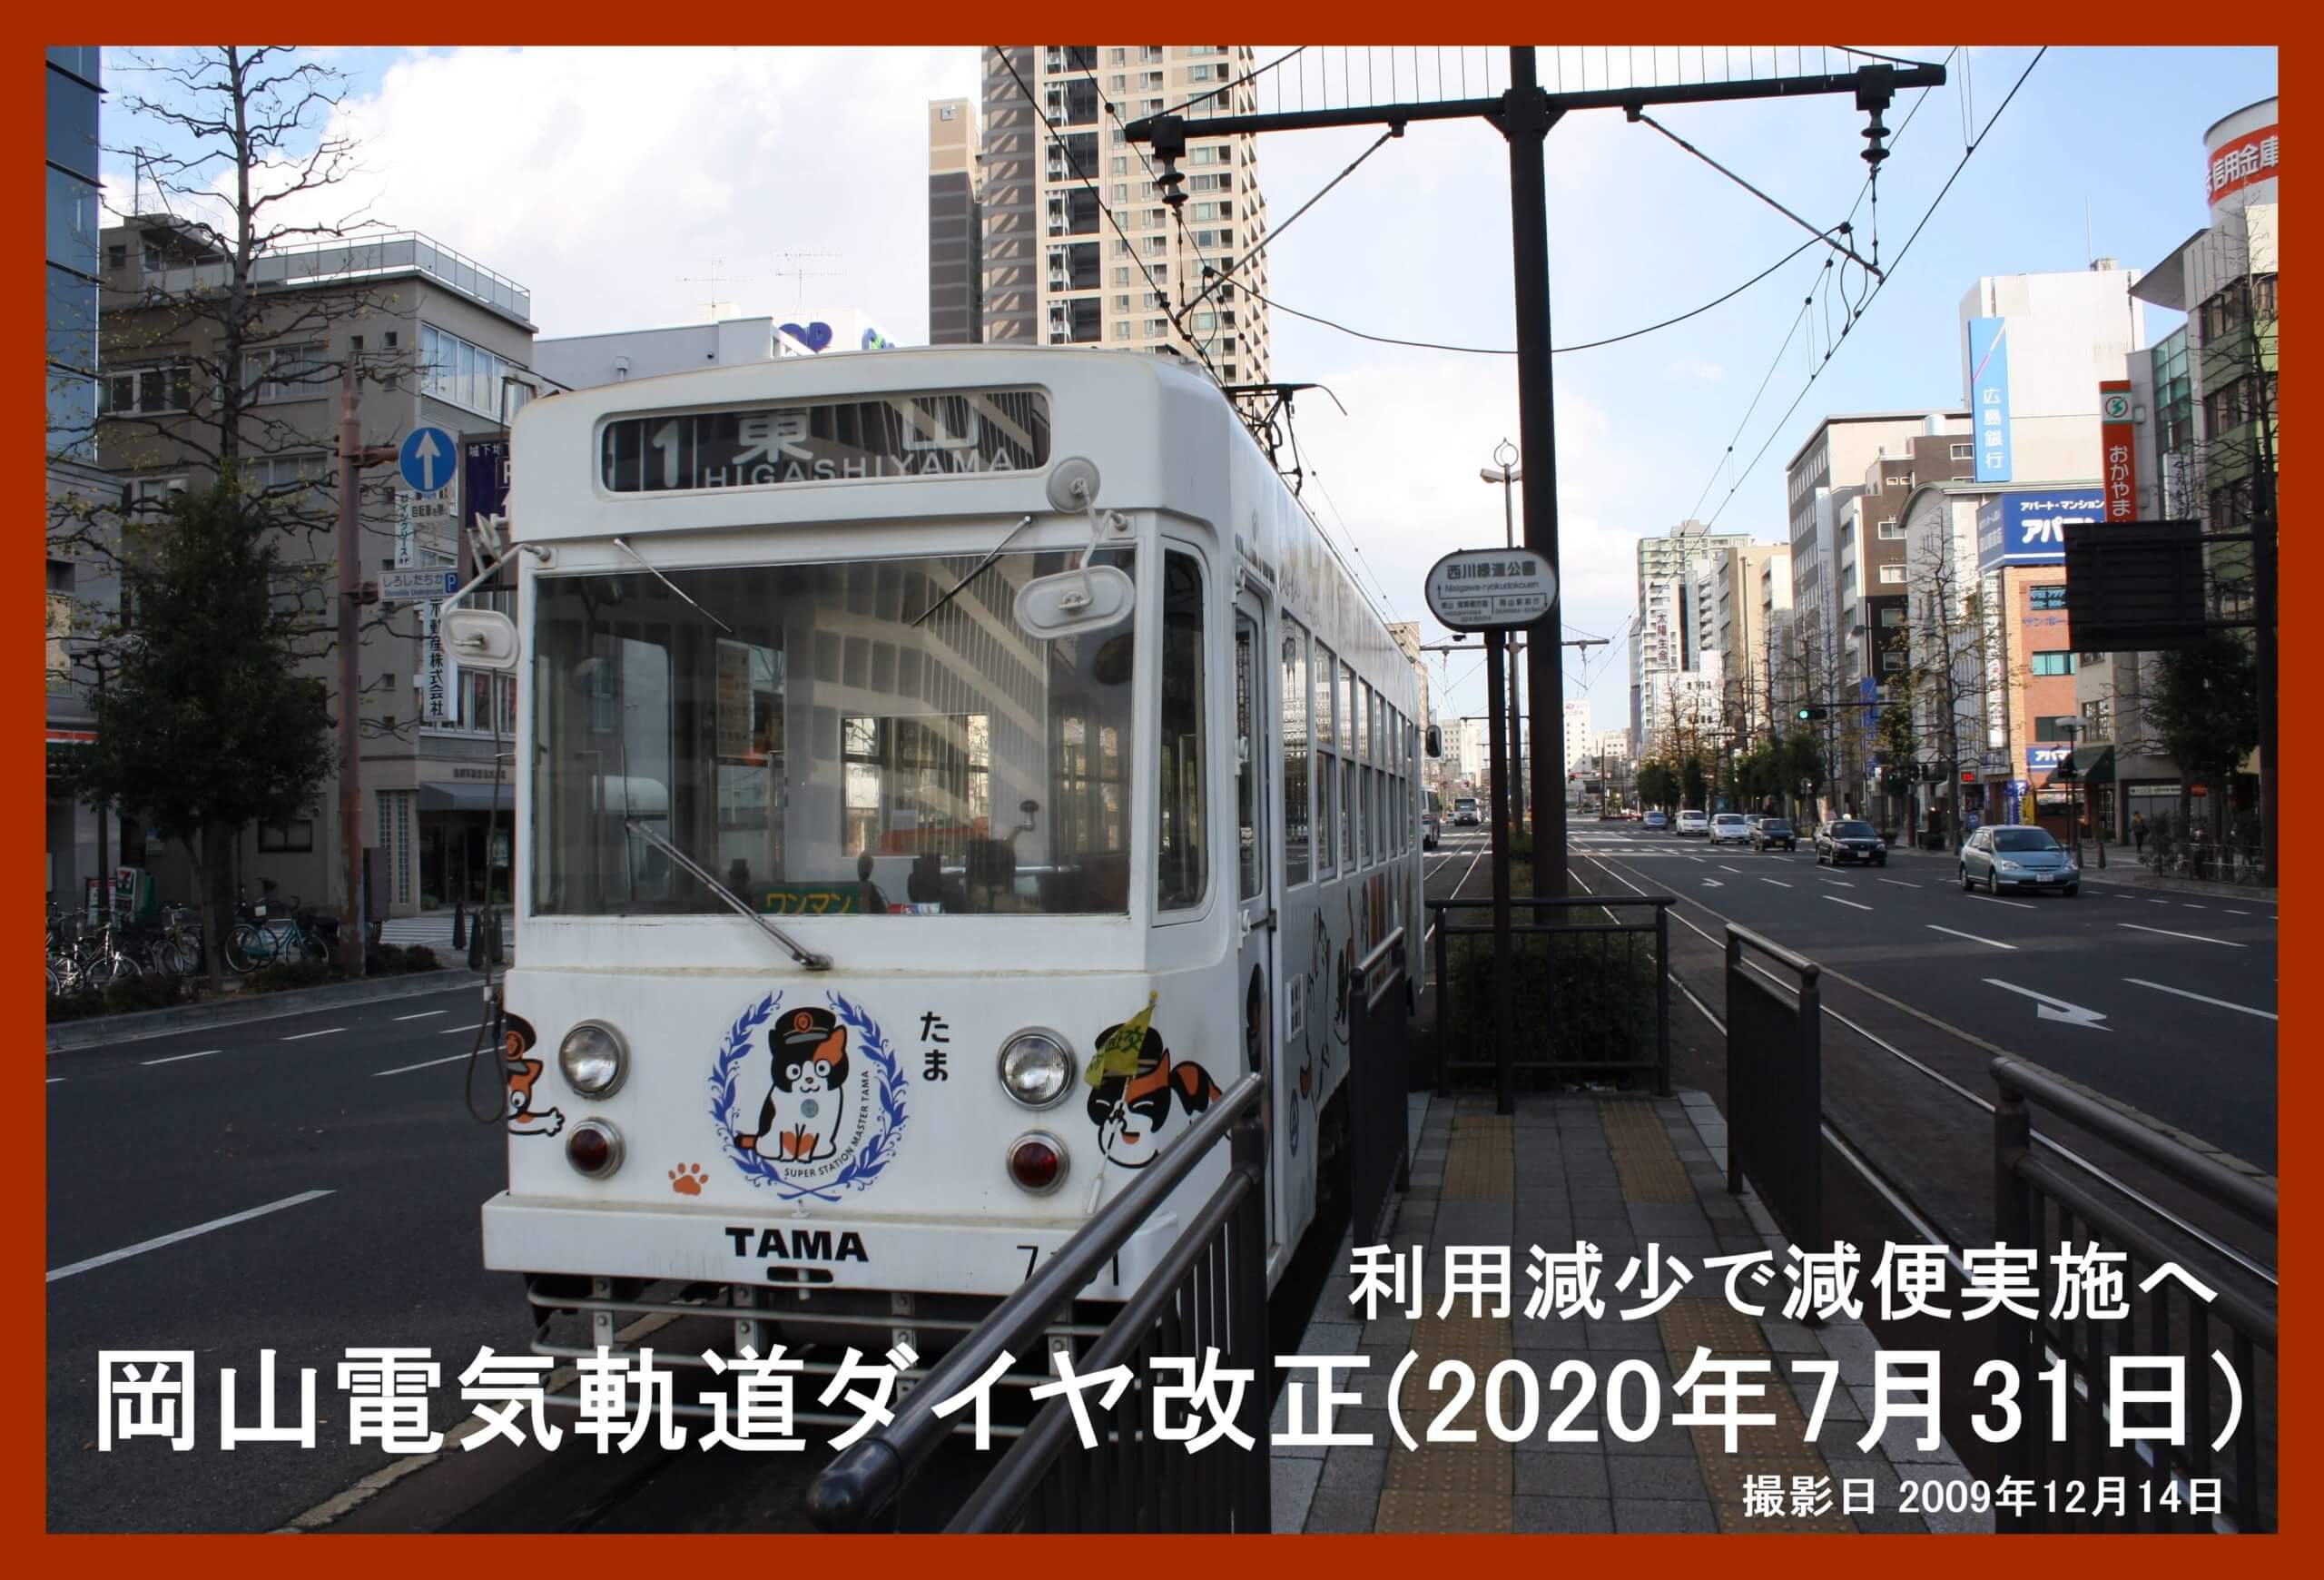 利用減少で減便実施へ 岡山電気軌道ダイヤ改正(2020年7月31日) 鉄道時刻表ニュース